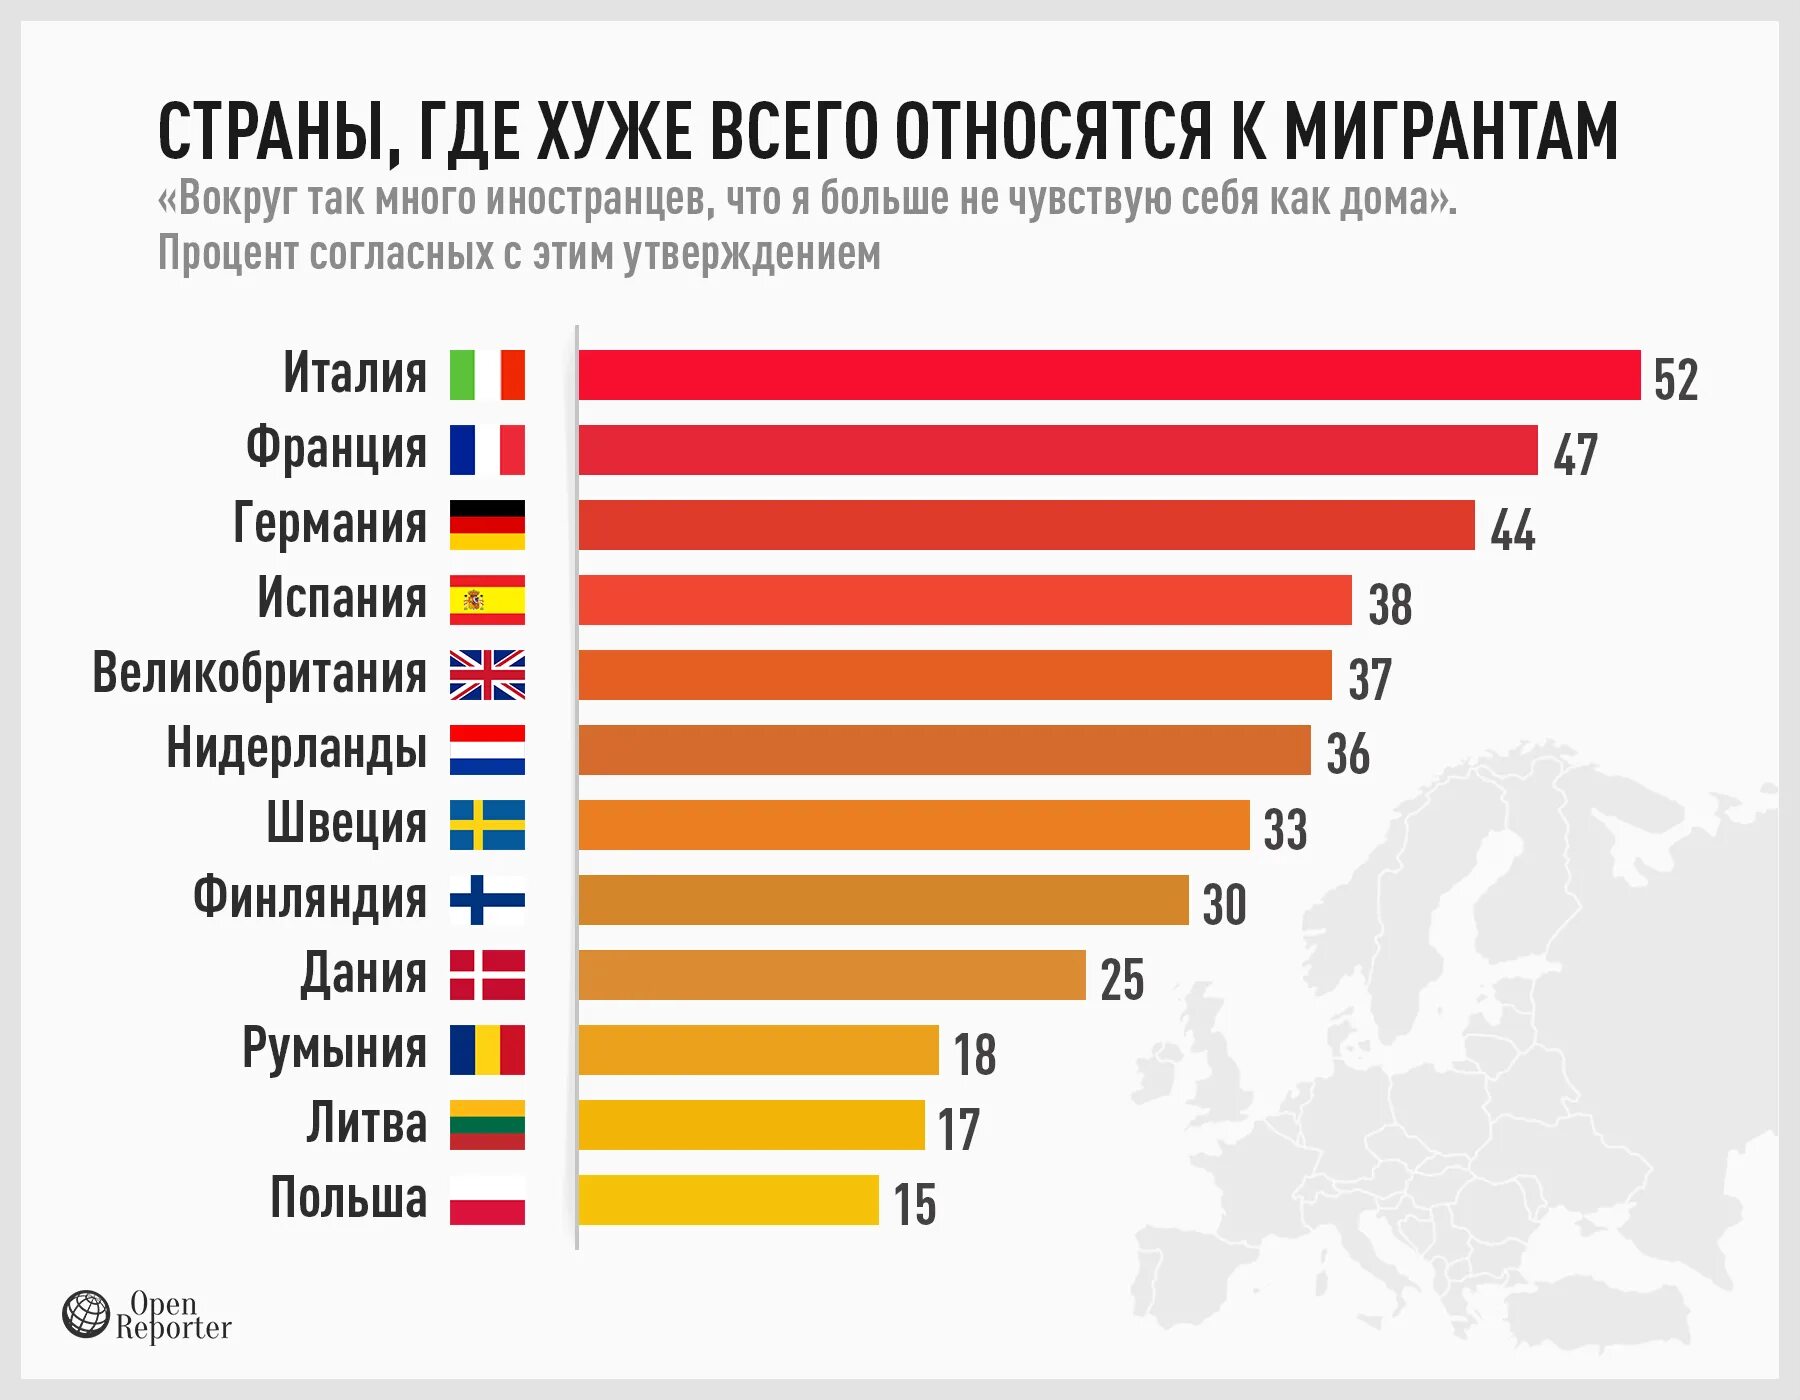 Самое лучшее государство. Где больше всего мигрантов. Статистика расизма по странам. Миграция в страны Европы. СММА популярная Страна.